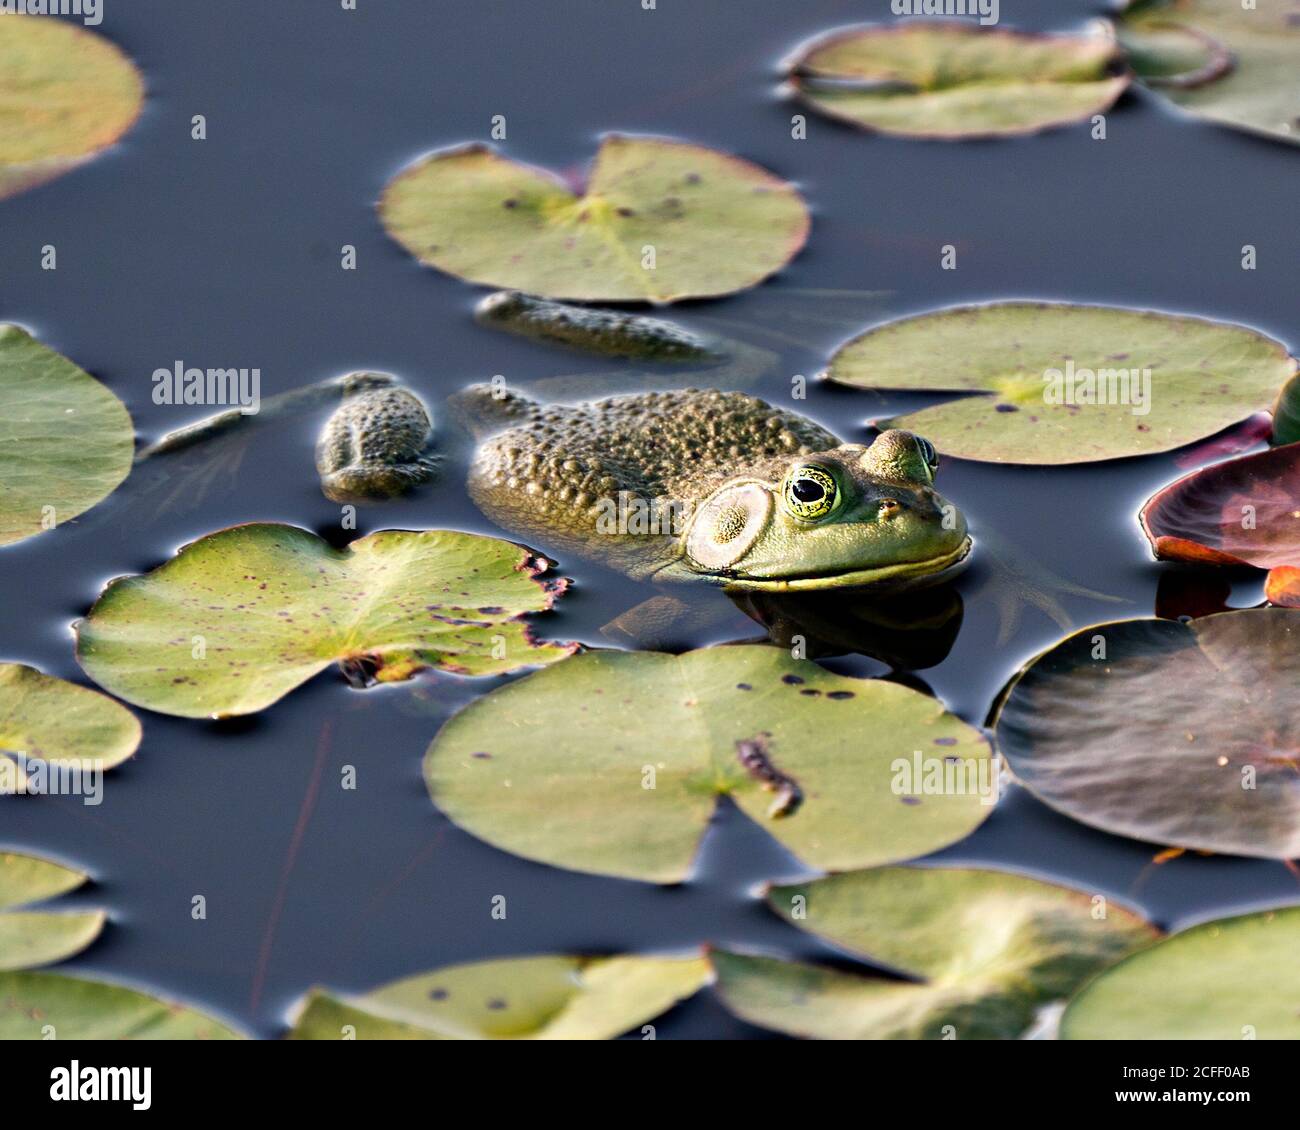 Frosch auf einer Seerose im Wasser sitzend, zeigt grünen Körper, Kopf, Beine, Auge in seiner Umgebung und Umgebung. Stockfoto